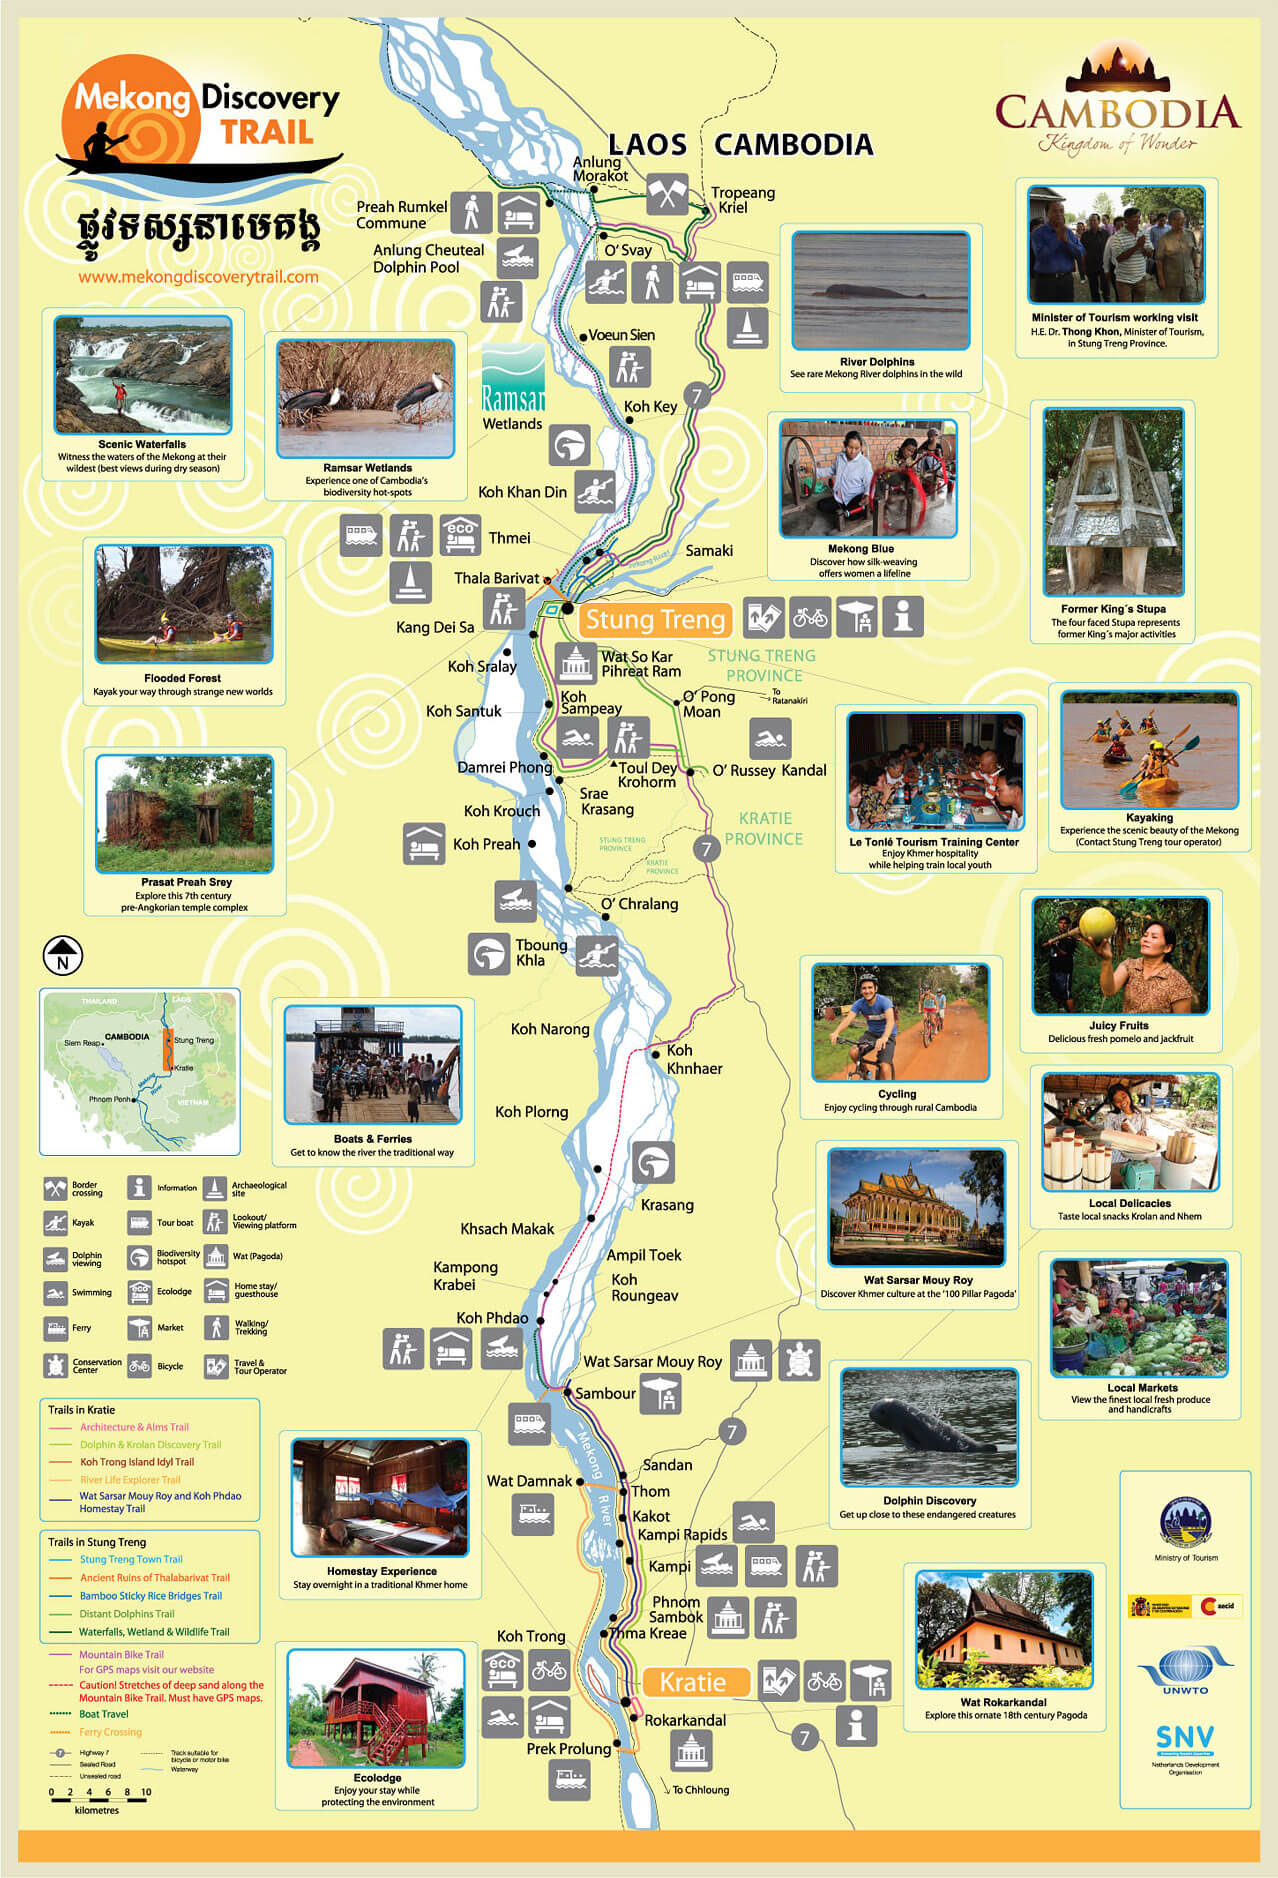 karte mekong discovery trail